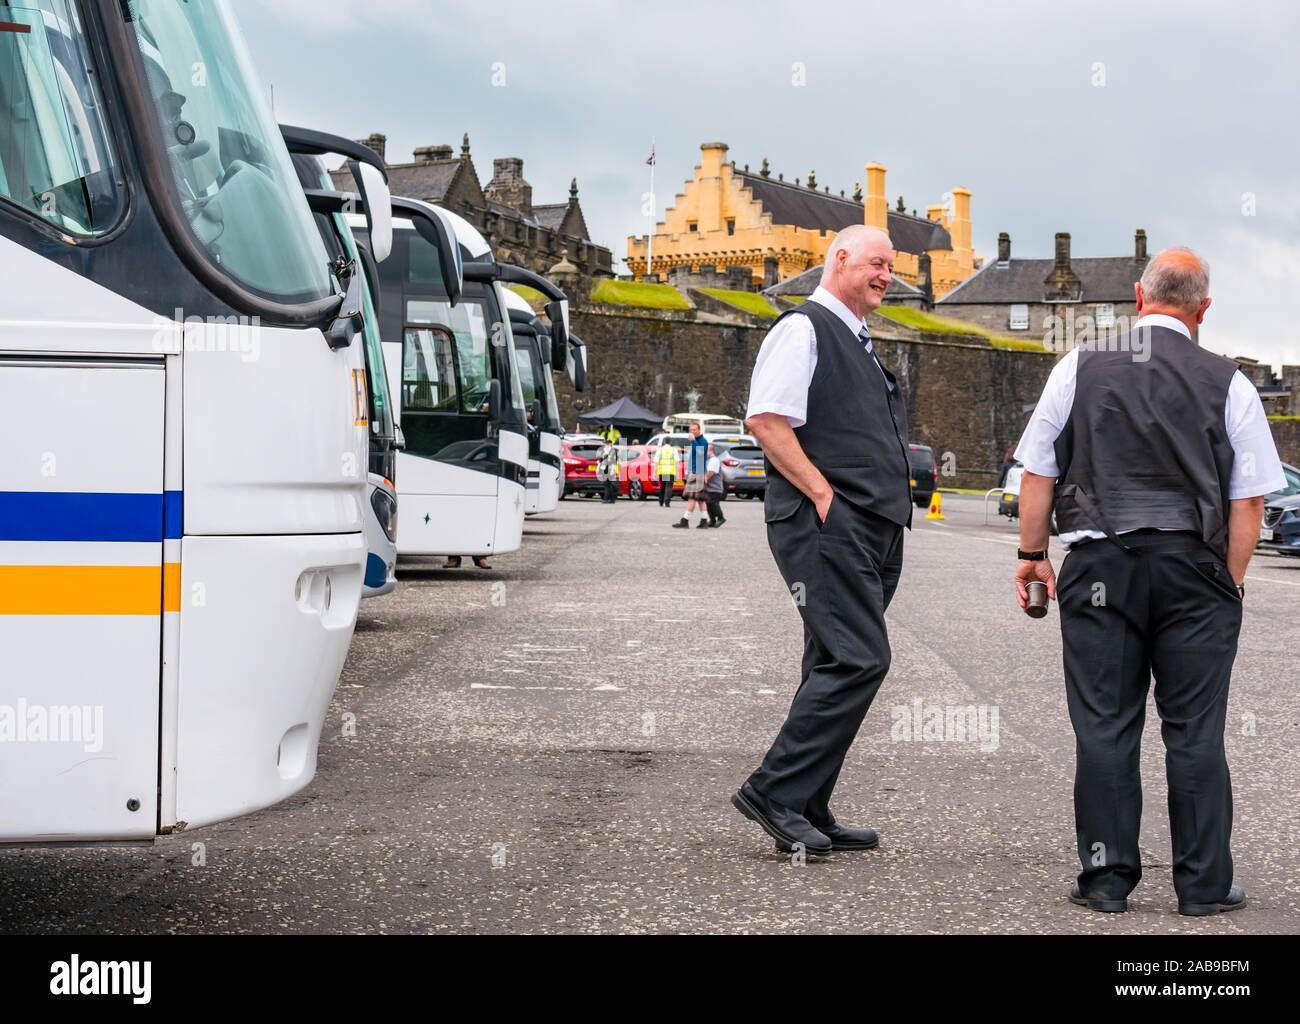 Parque de autocares y autobuses con conductores de autobús, en espera de la explanada del castillo, el Castillo de Stirling, Escocia, Reino Unido Foto de stock